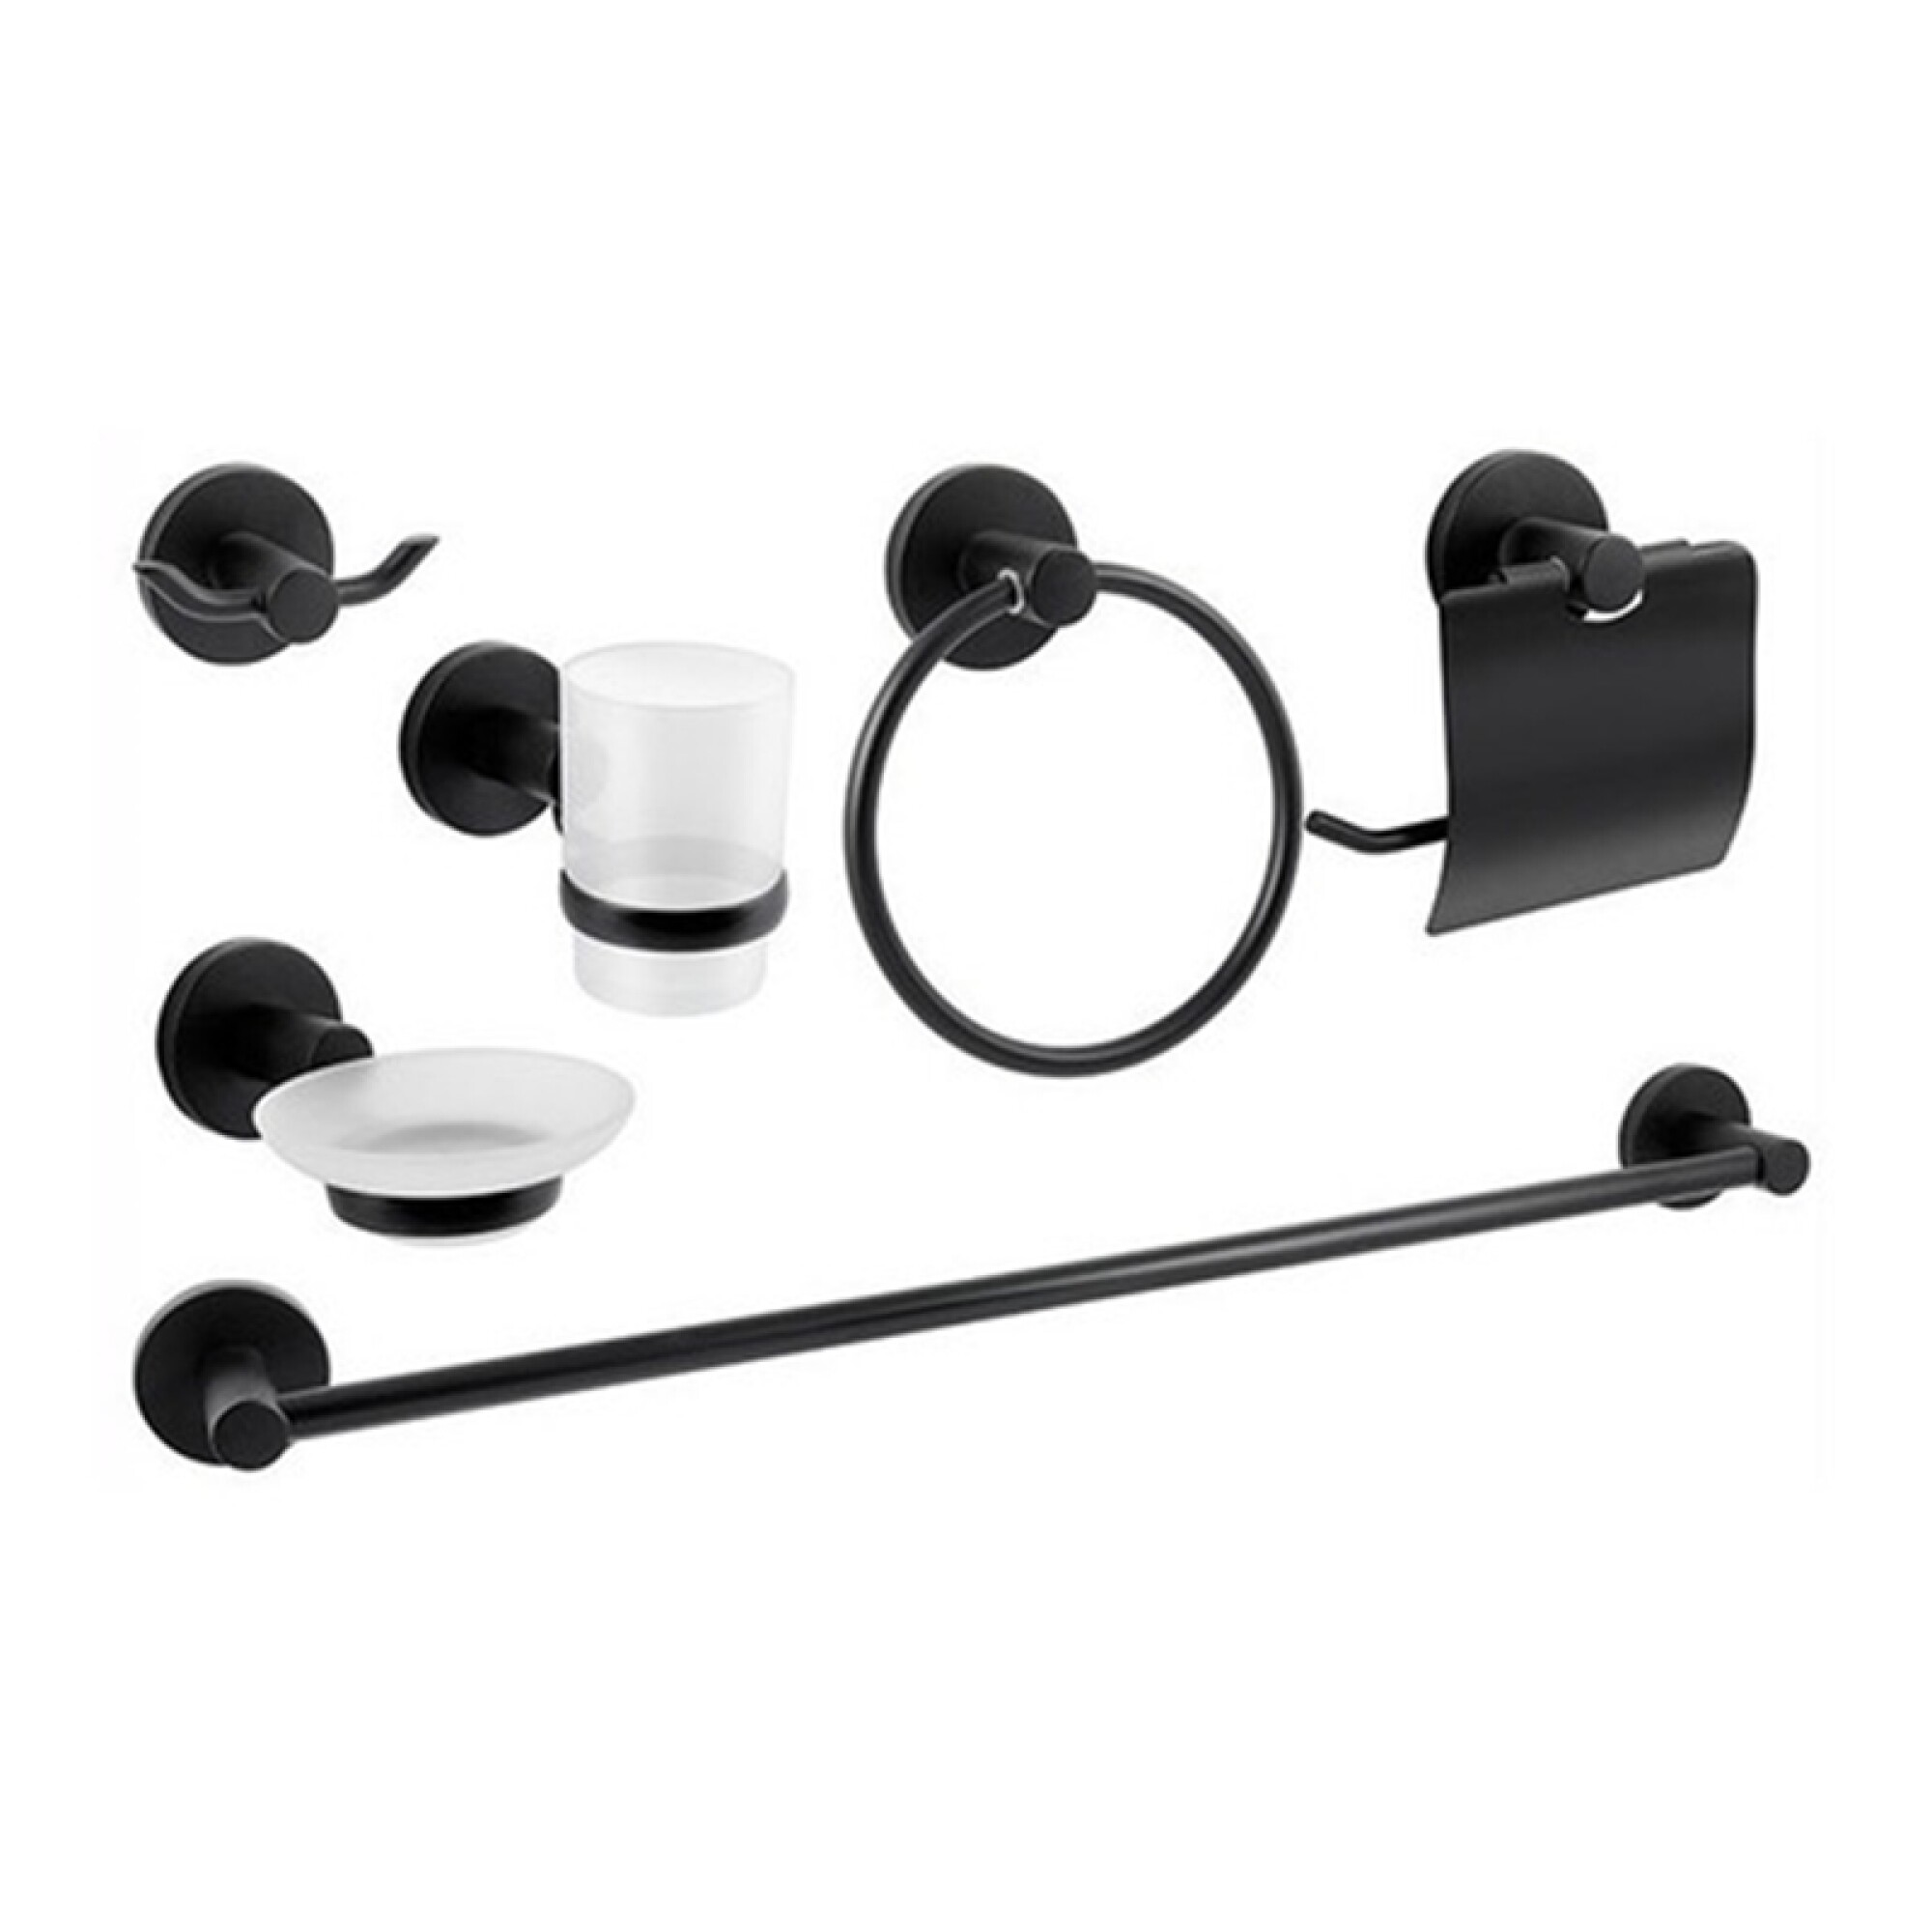 Set de accesorios de baño  Set de accesorios de baño negro-Baño-Aliexpress